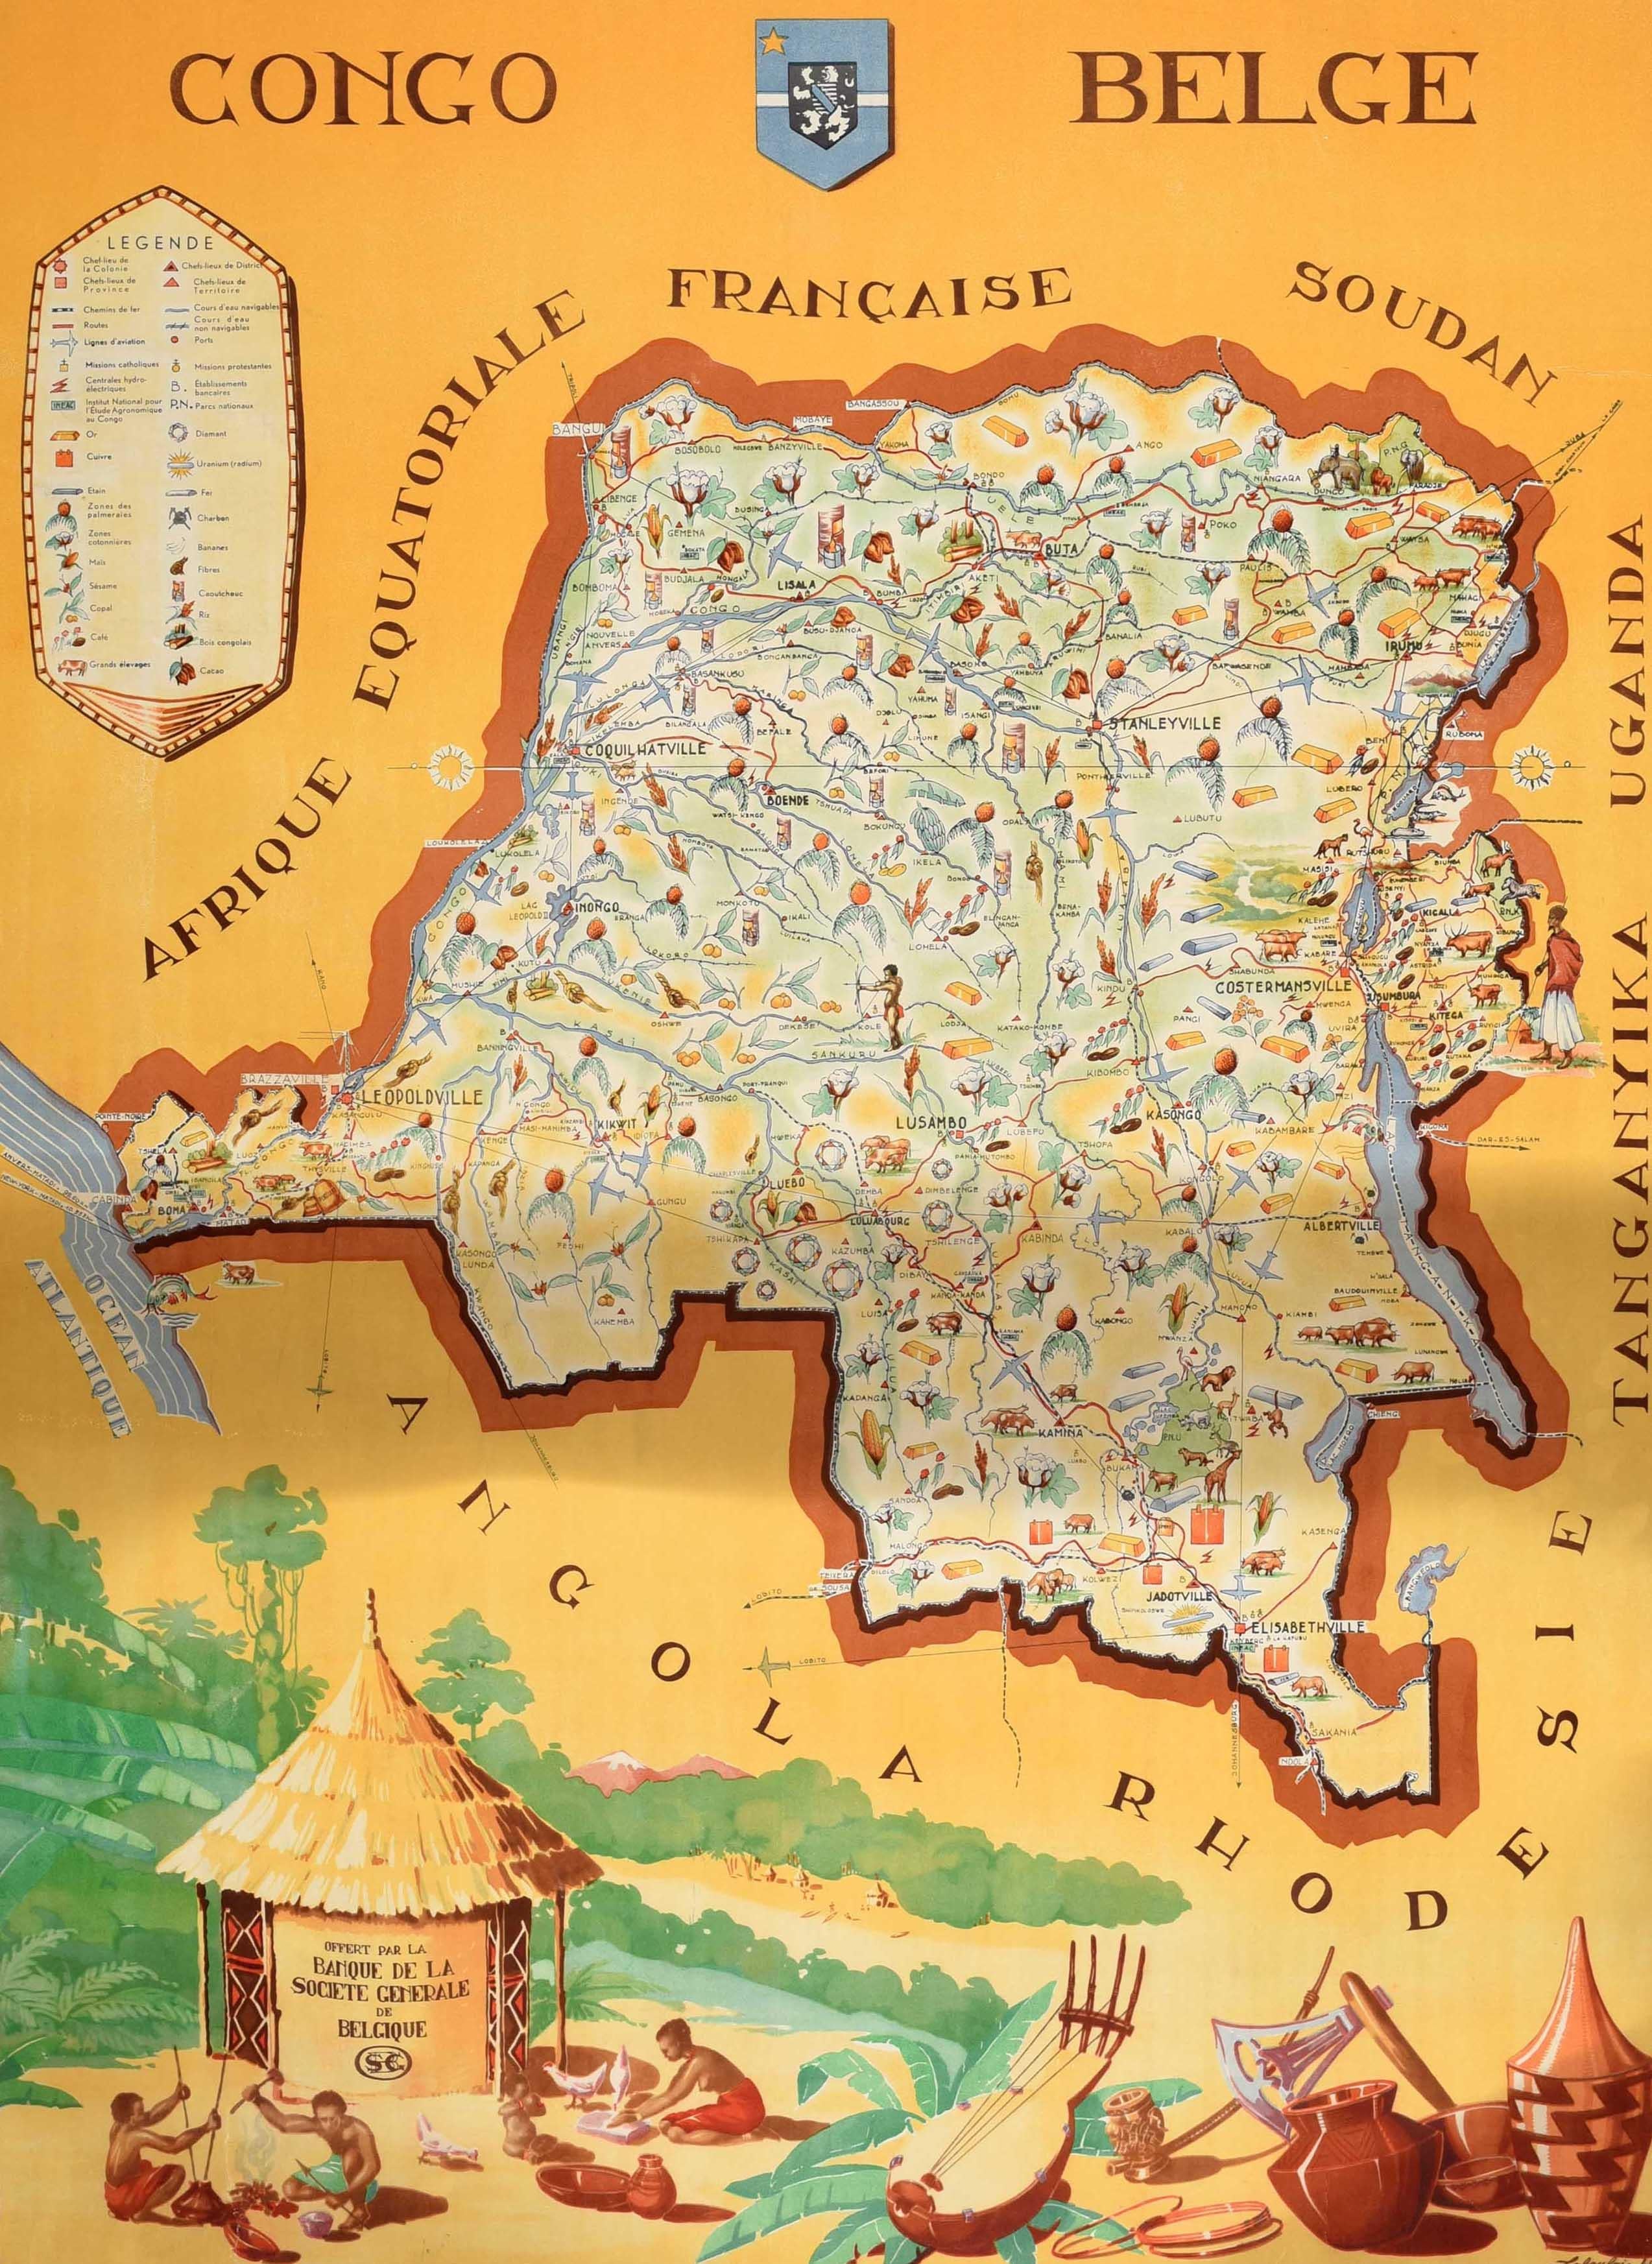 Affiche de voyage originale pour le Congo belge comprenant une carte illustrée de l'Afrique équatoriale française, du Soudan, de l'Ouganda, du Tanganyika, de la Rhodésie et de l'Angola. Le design de Frans Laboulais (1903-1988) présente une carte